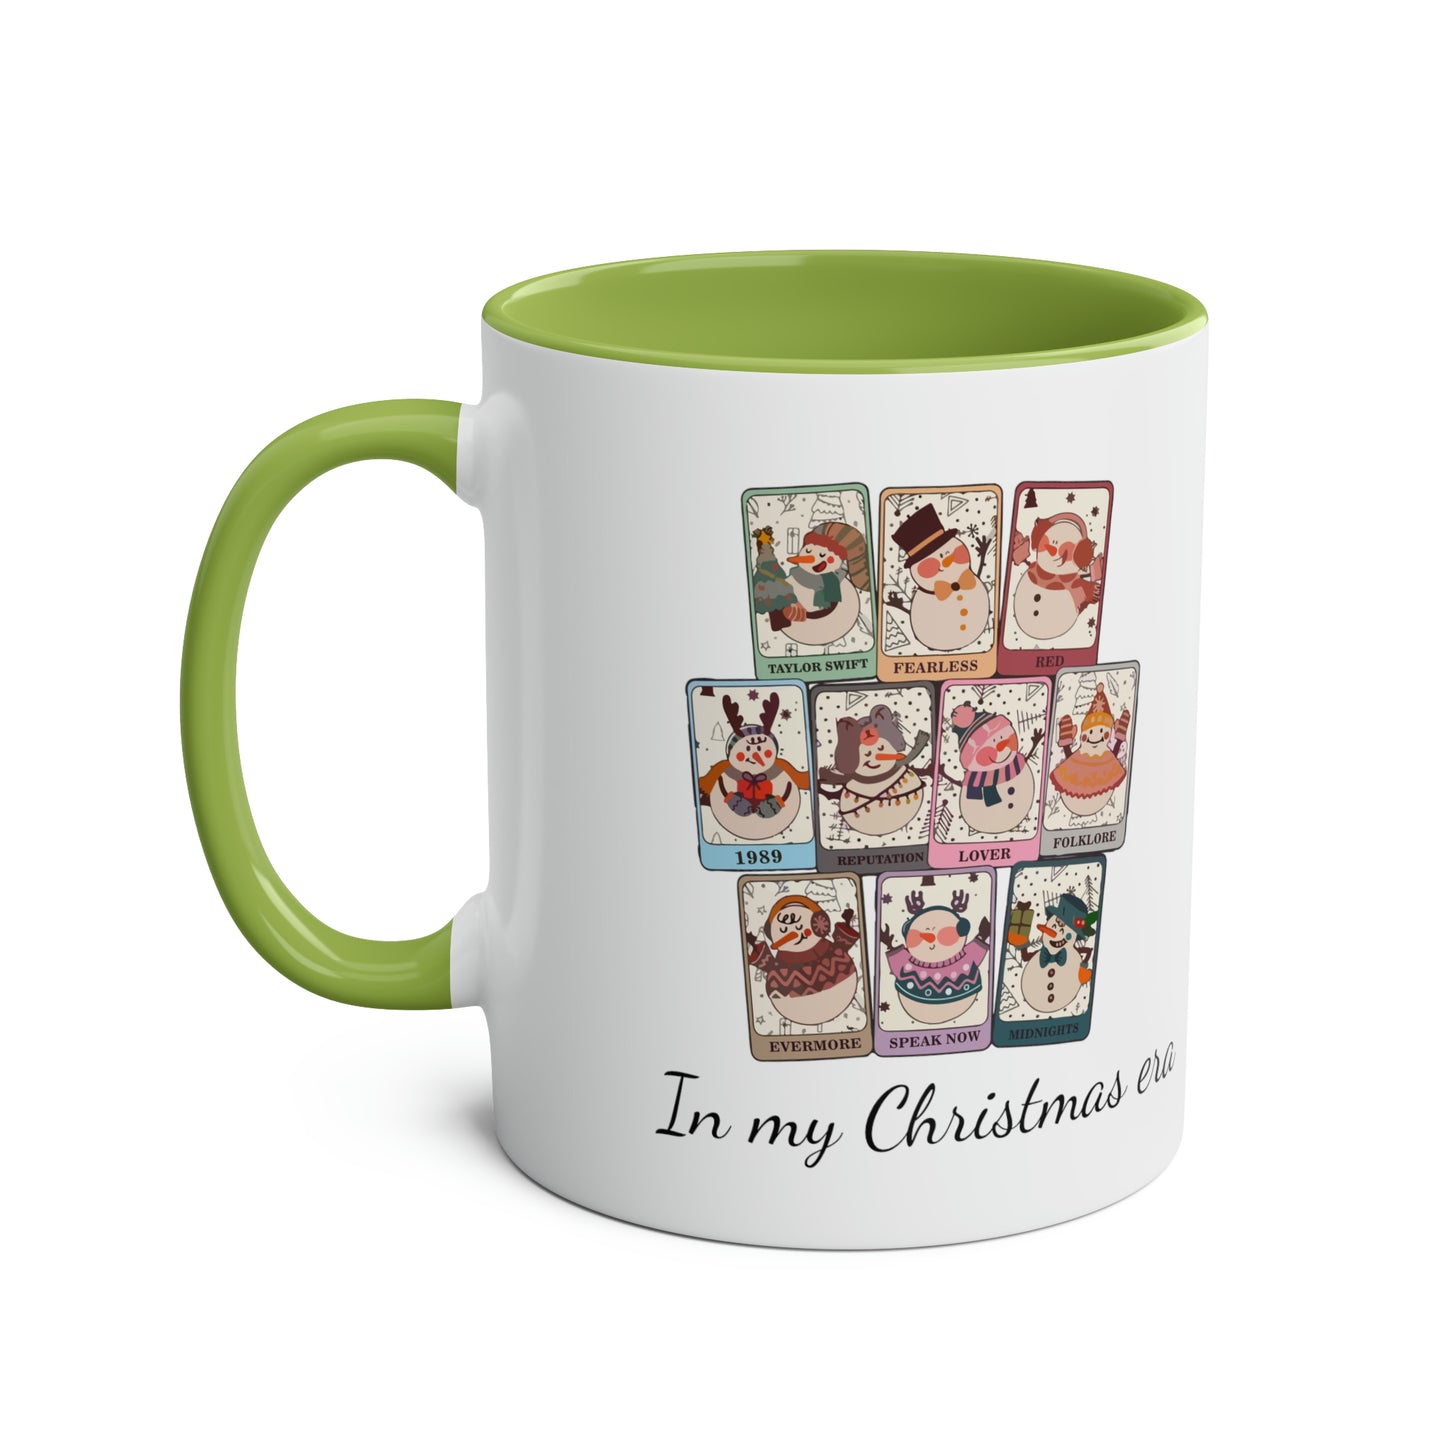 In my Christmas era / Taylor's Christmas Mug